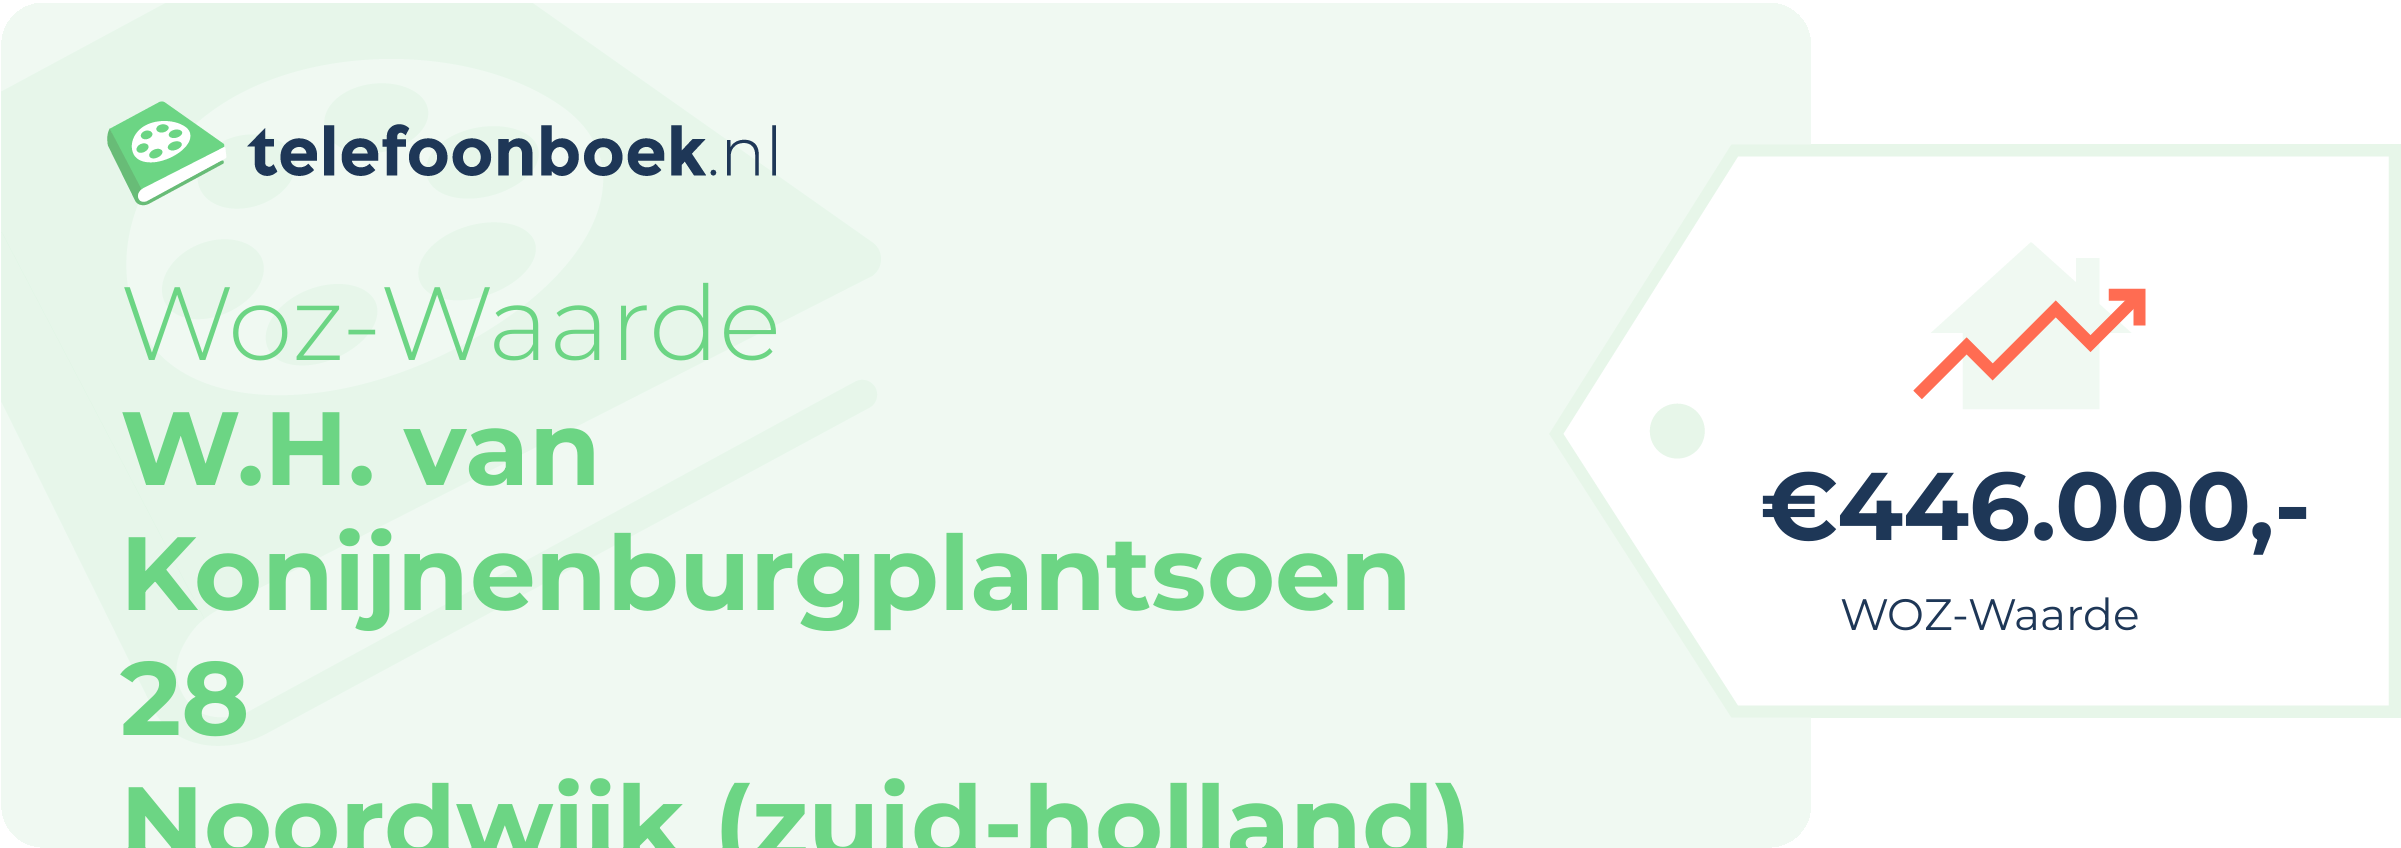 WOZ-waarde W.H. Van Konijnenburgplantsoen 28 Noordwijk (Zuid-Holland)